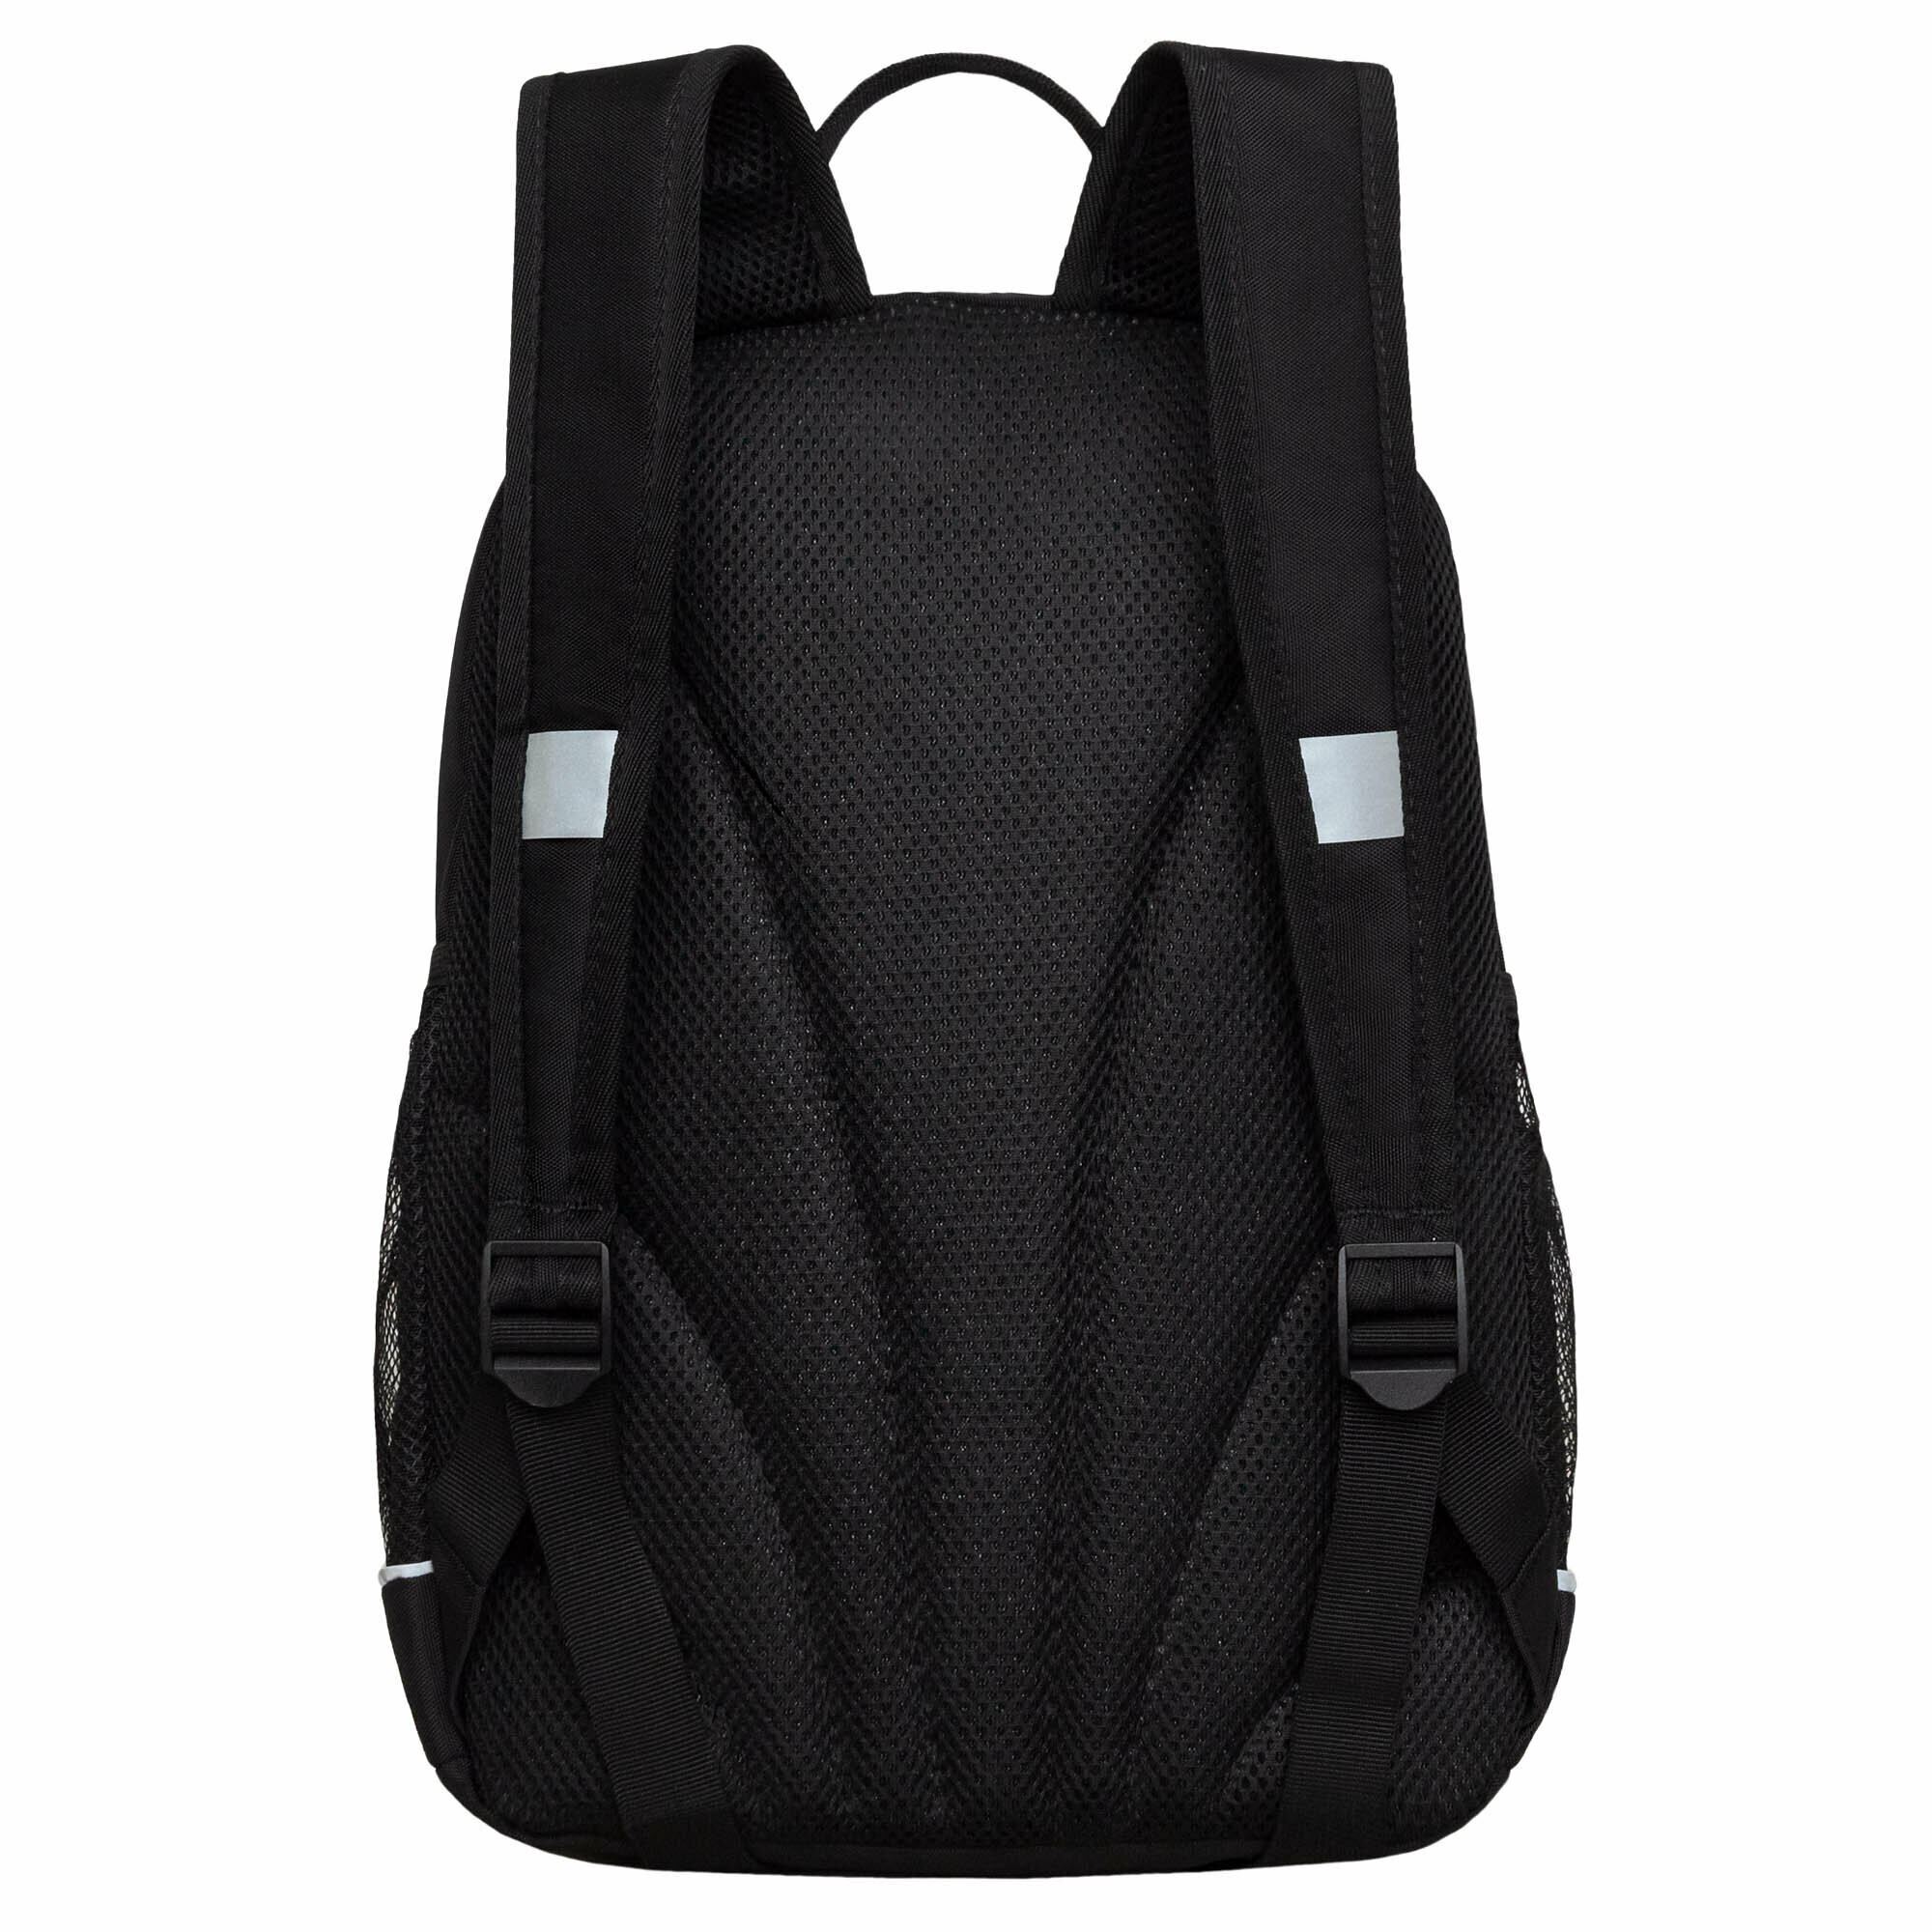 Рюкзак школьный GRIZZLY с карманом для ноутбука 13", жесткой спинкой, двумя отделениями, для девочки RG-463-3/1